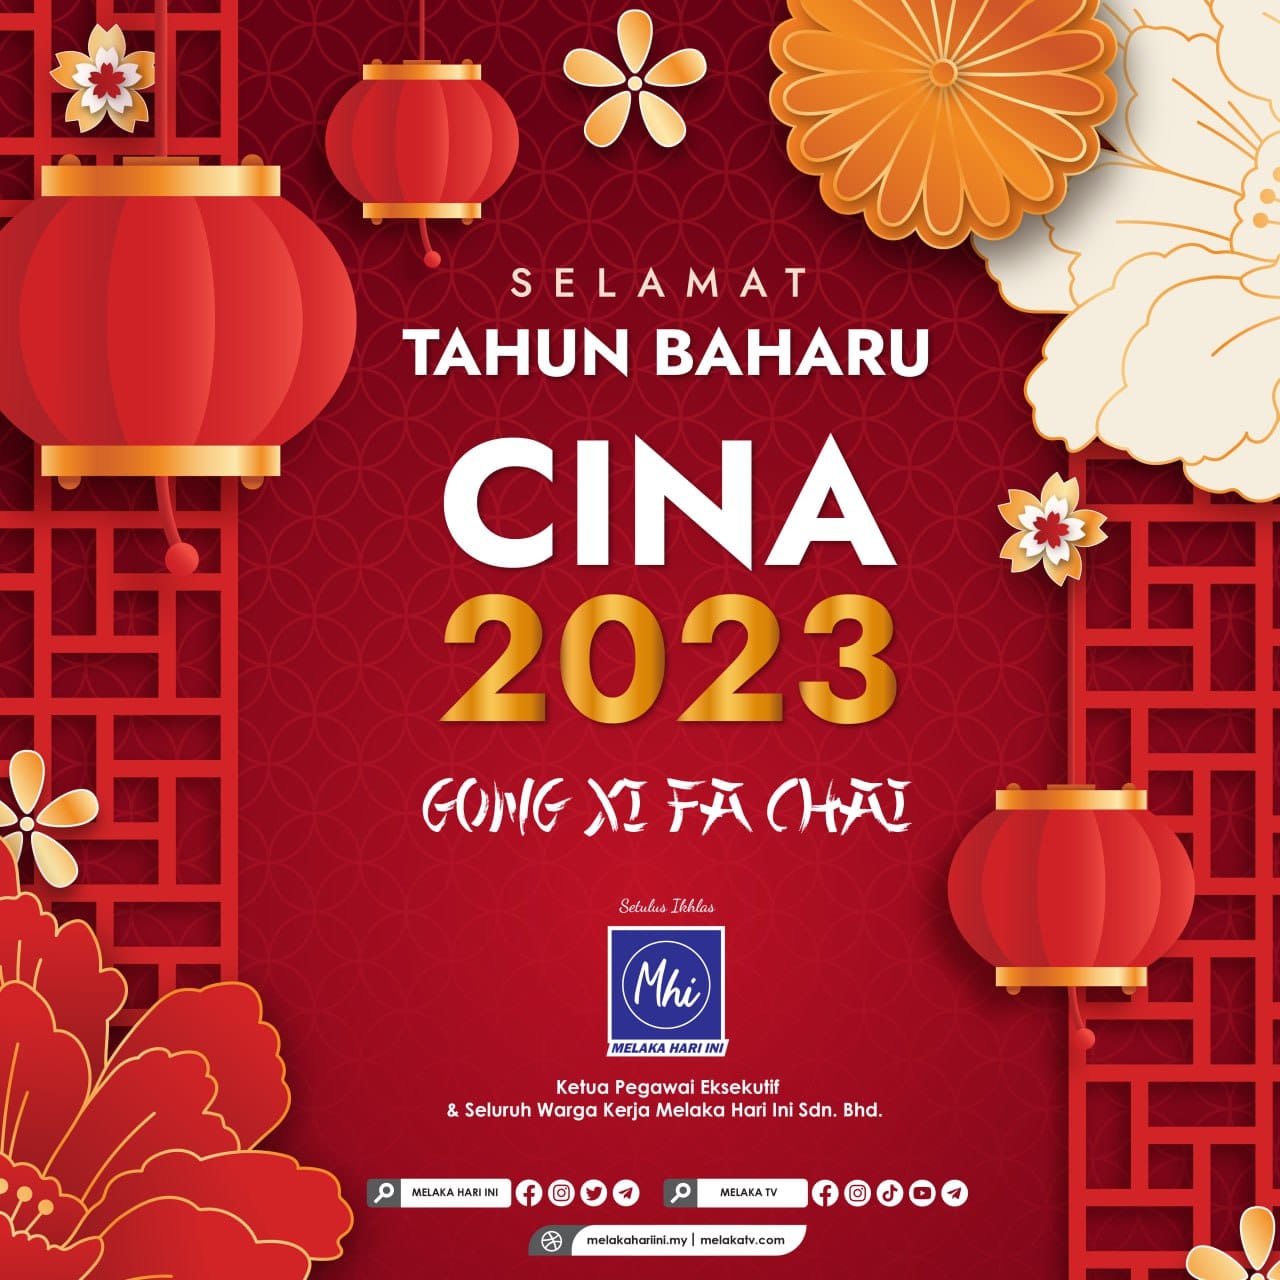 Selamat Tahun Baharu Cina 2023